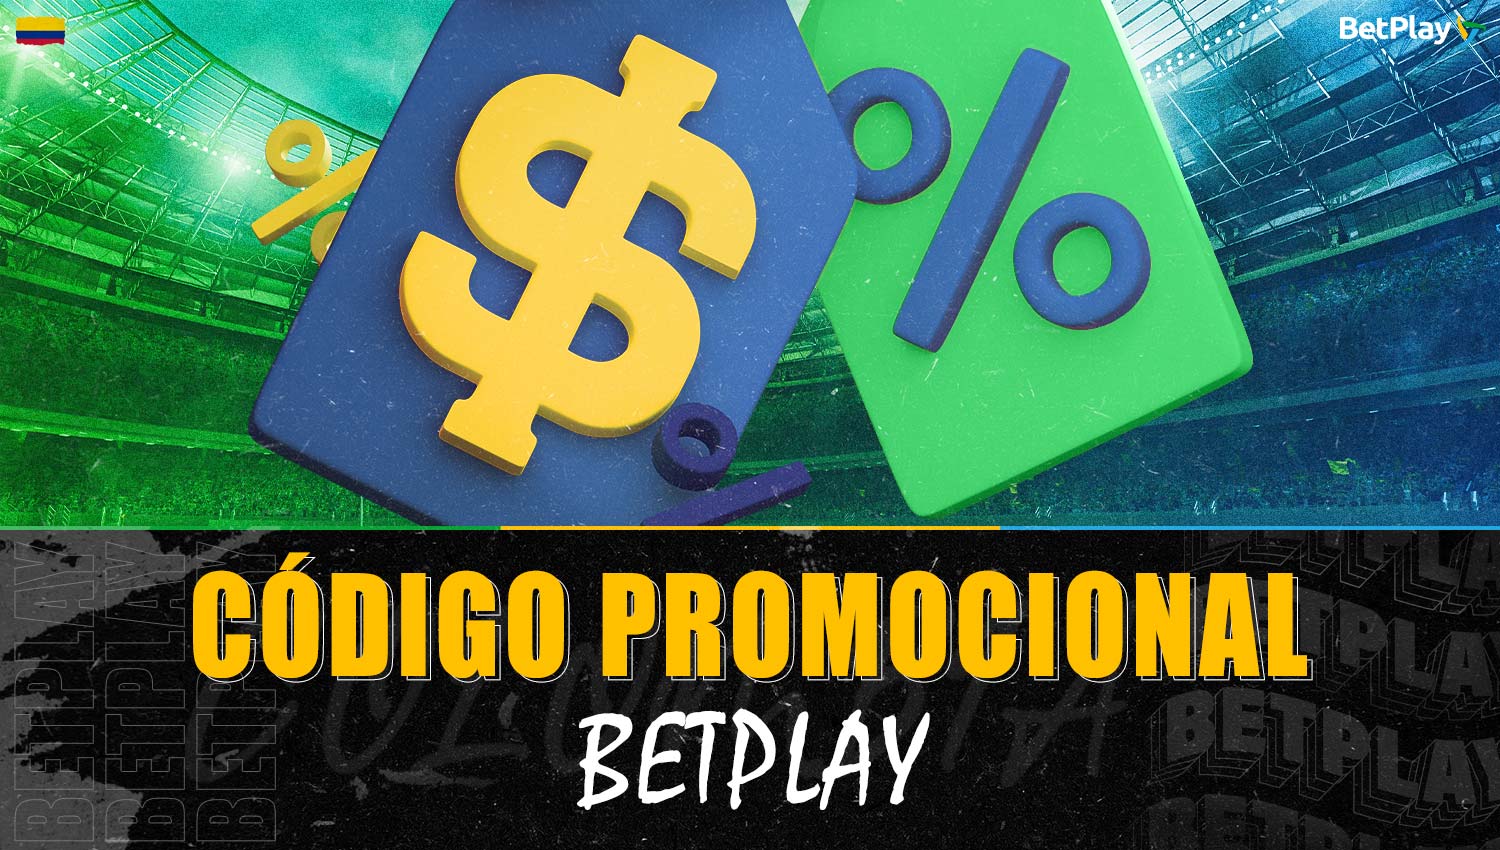 Sobre Betplay código promocional para jugadores de Colombia